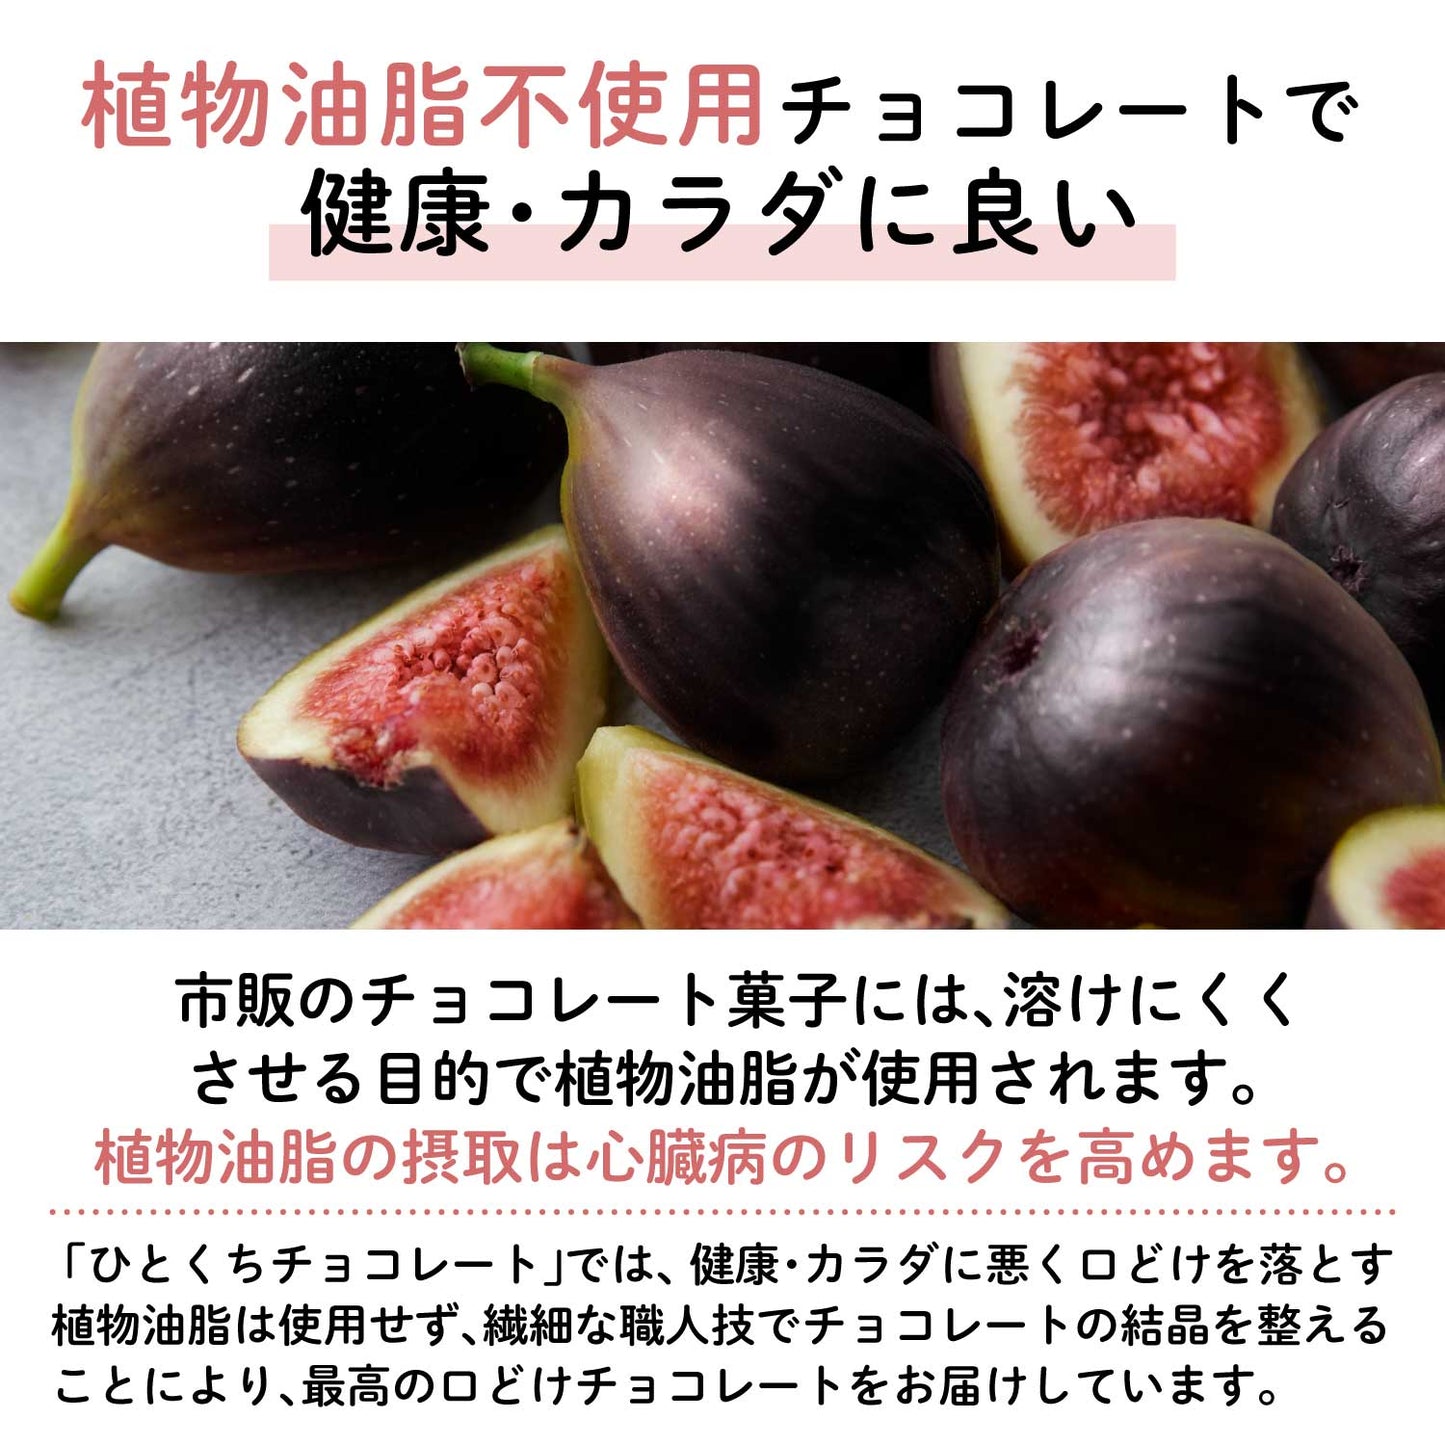 【残りわずか】幻の黒いちじく"ビオレソリエス"フルーツチョコレート